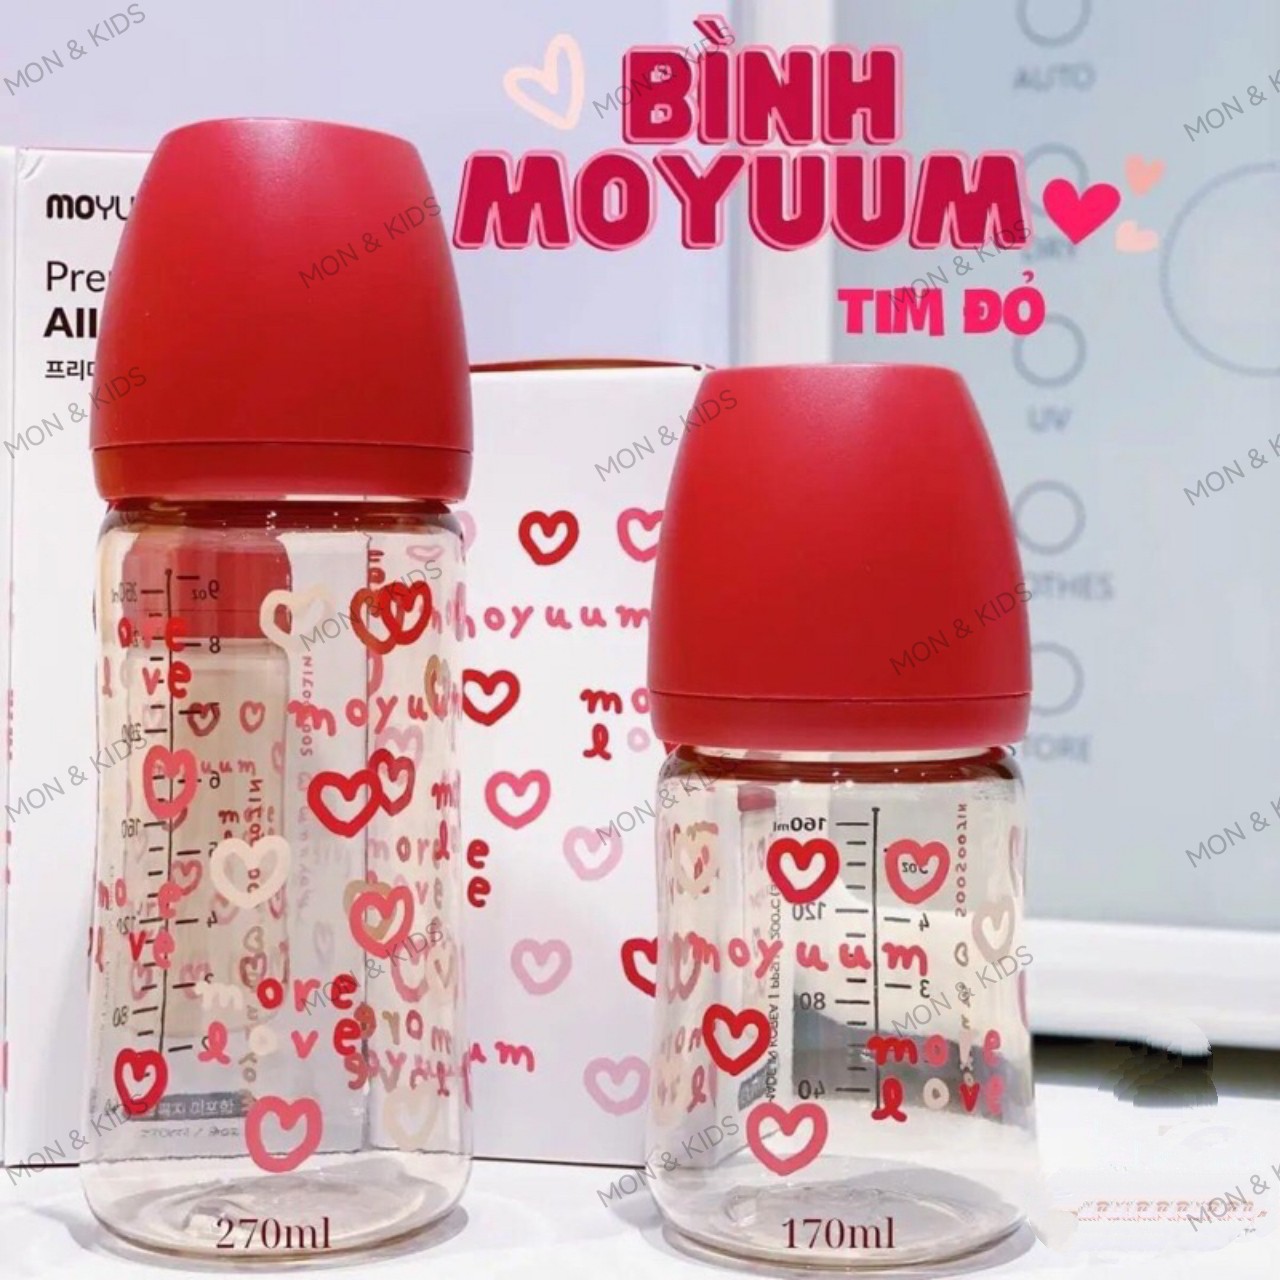 Bình sữa Moyuum Hàn Quốc 270ml Tim Đỏ (More Love Edition)